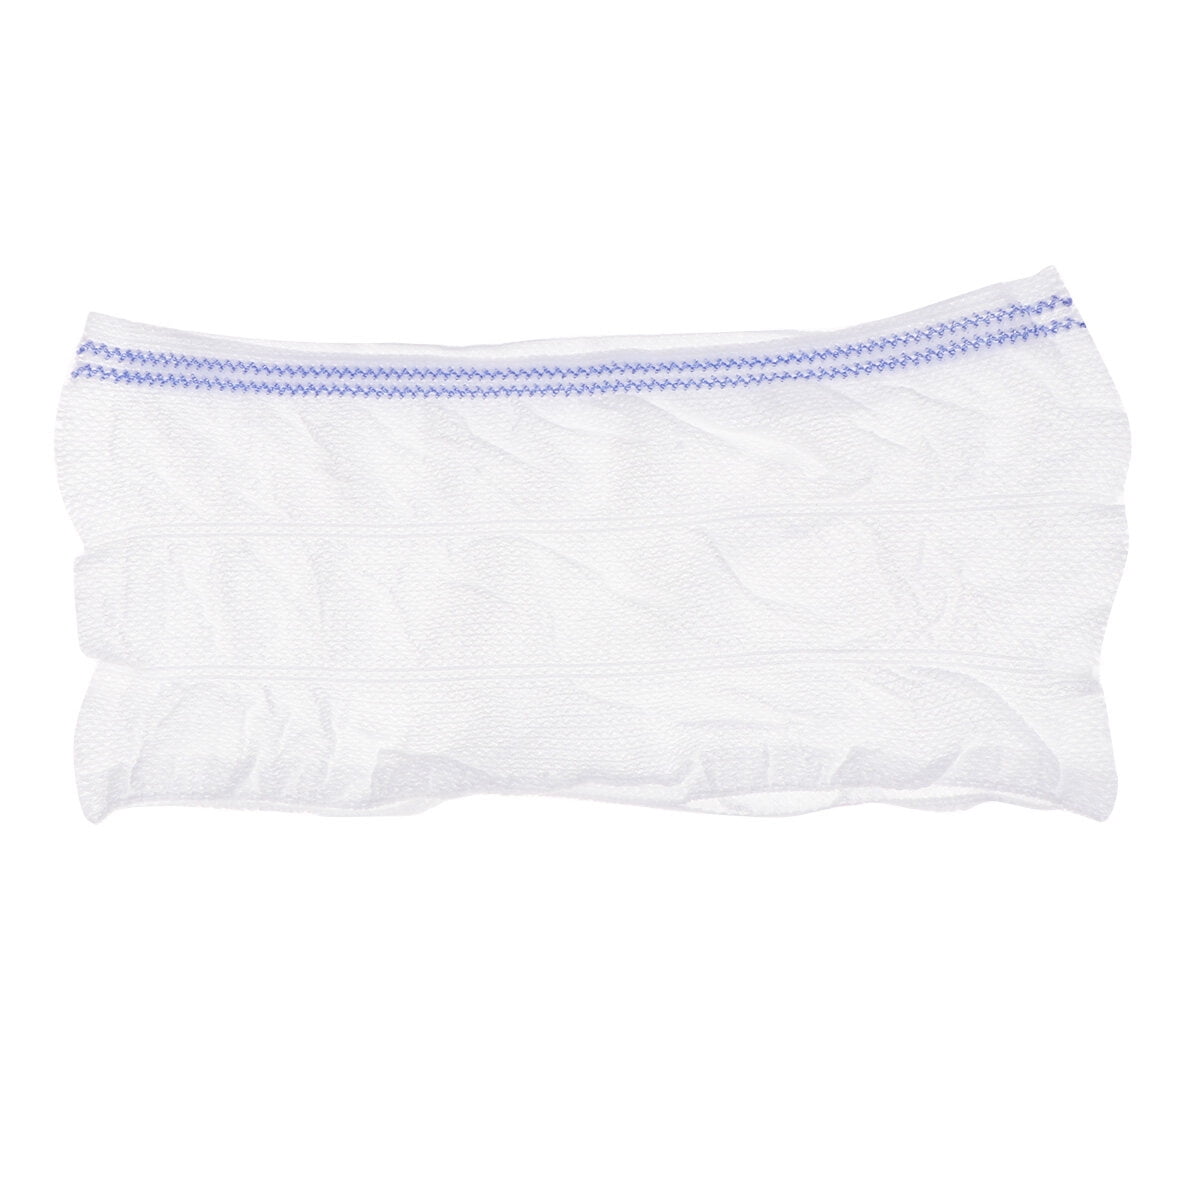 Ymiko Cotton Panties,Women Disposable Panties,8pcs Women Disposable  Underwear Hospital Travel Portable White Soft Breathable Postpartum Cotton  Panties 